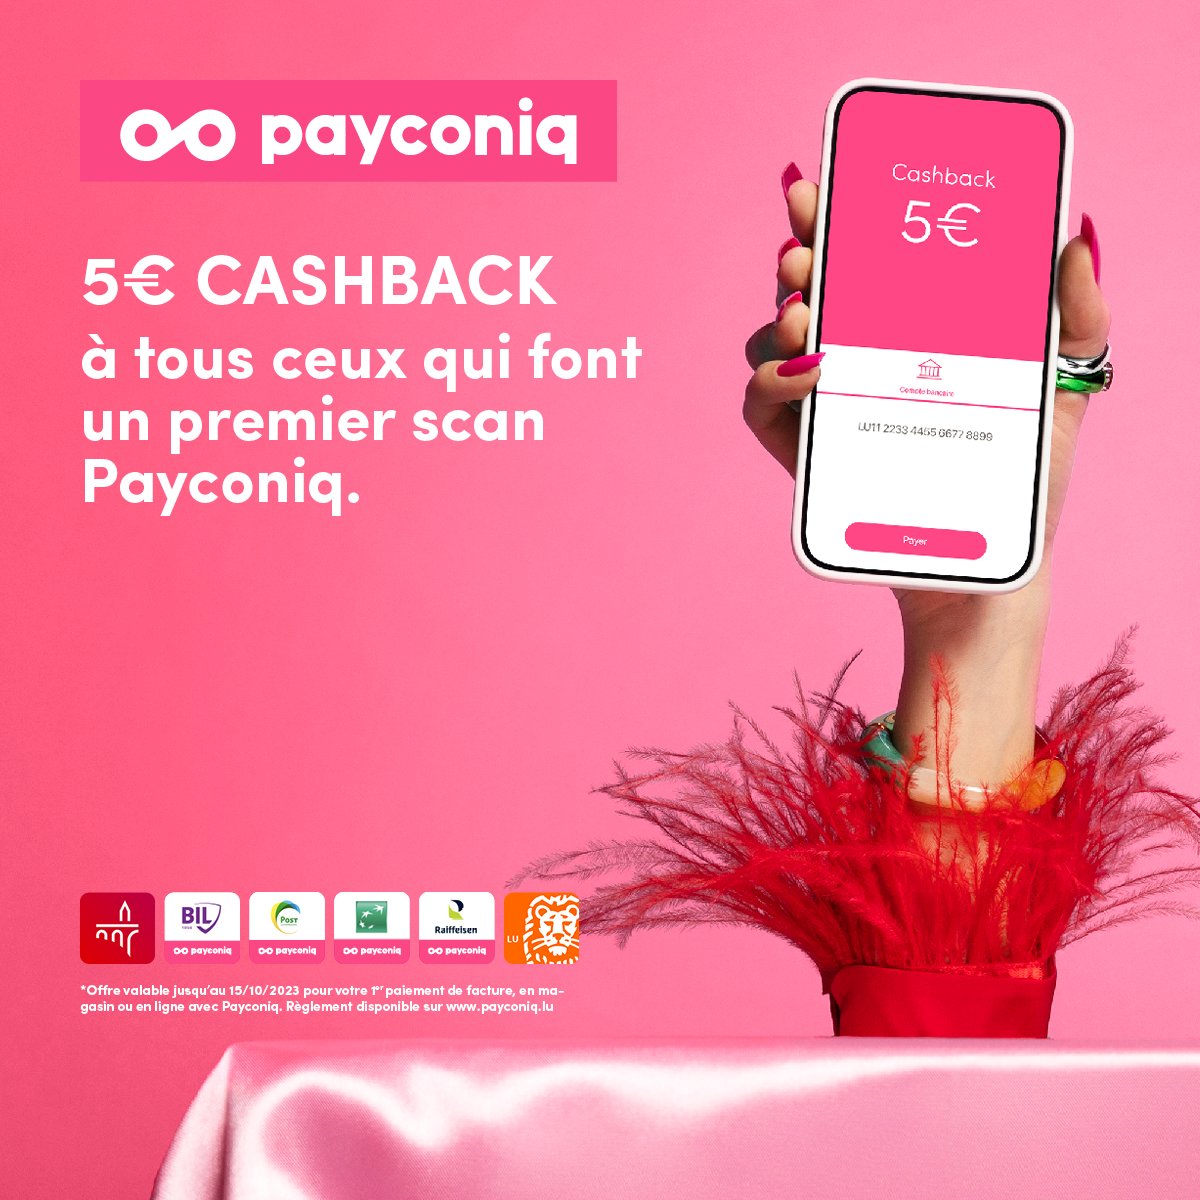 Plus que 5 jours pour profiter de notre offre CASHBACK ! 💥 Effectuez votre premier paiement avec Payconiq et on vous offre 5€.. elle est pas belle la vie ? Plus d'info : payconiq.lu/fr/cashback/ #campaign #cashback #payconiq